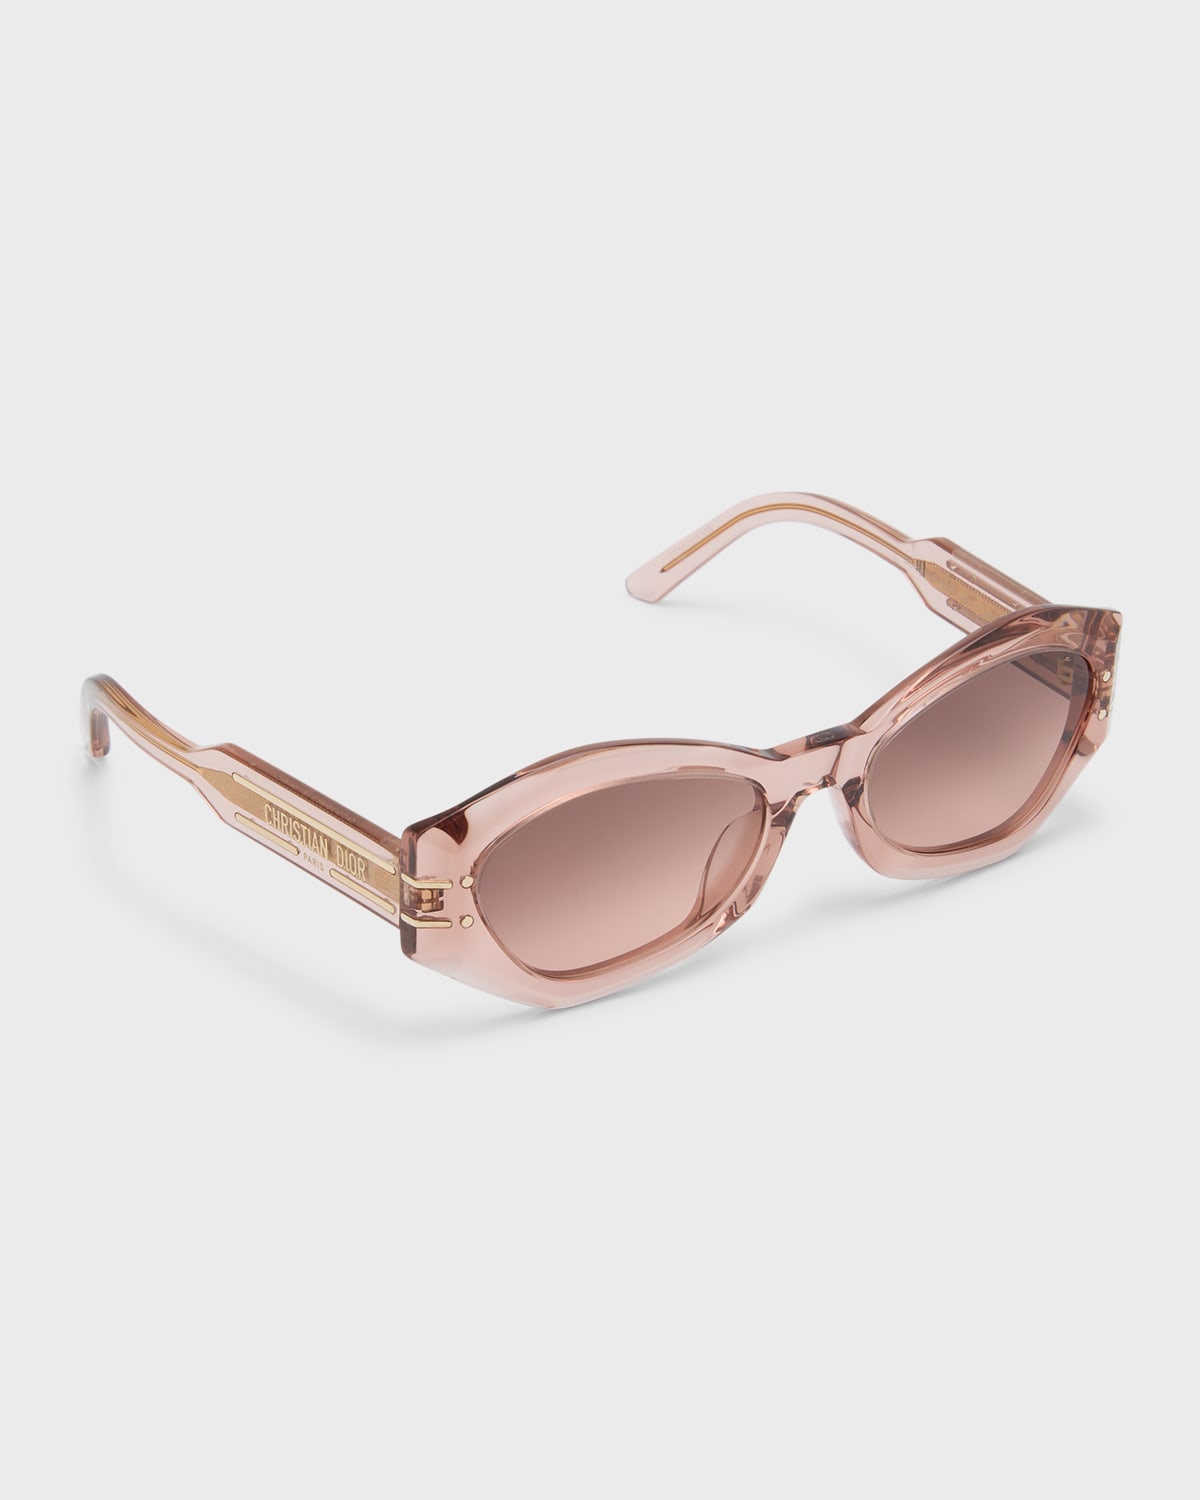 DiorSignature B1U Sunglasses